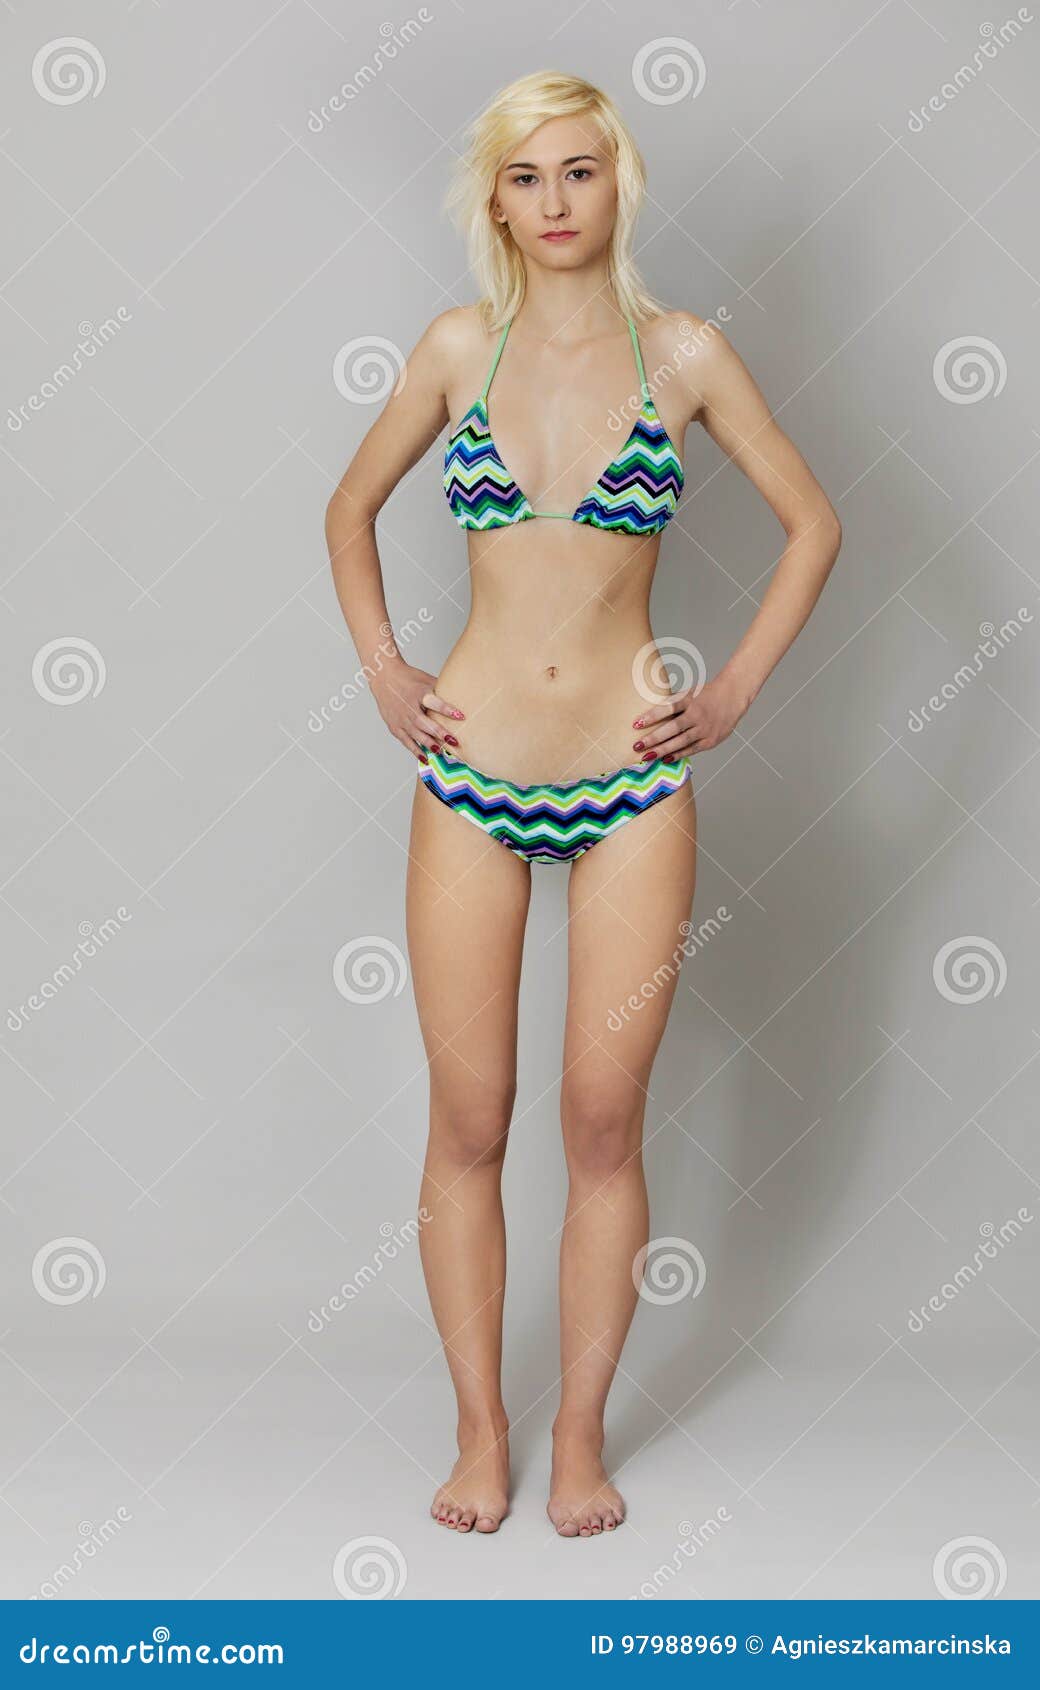 beautiful young women in bikinis